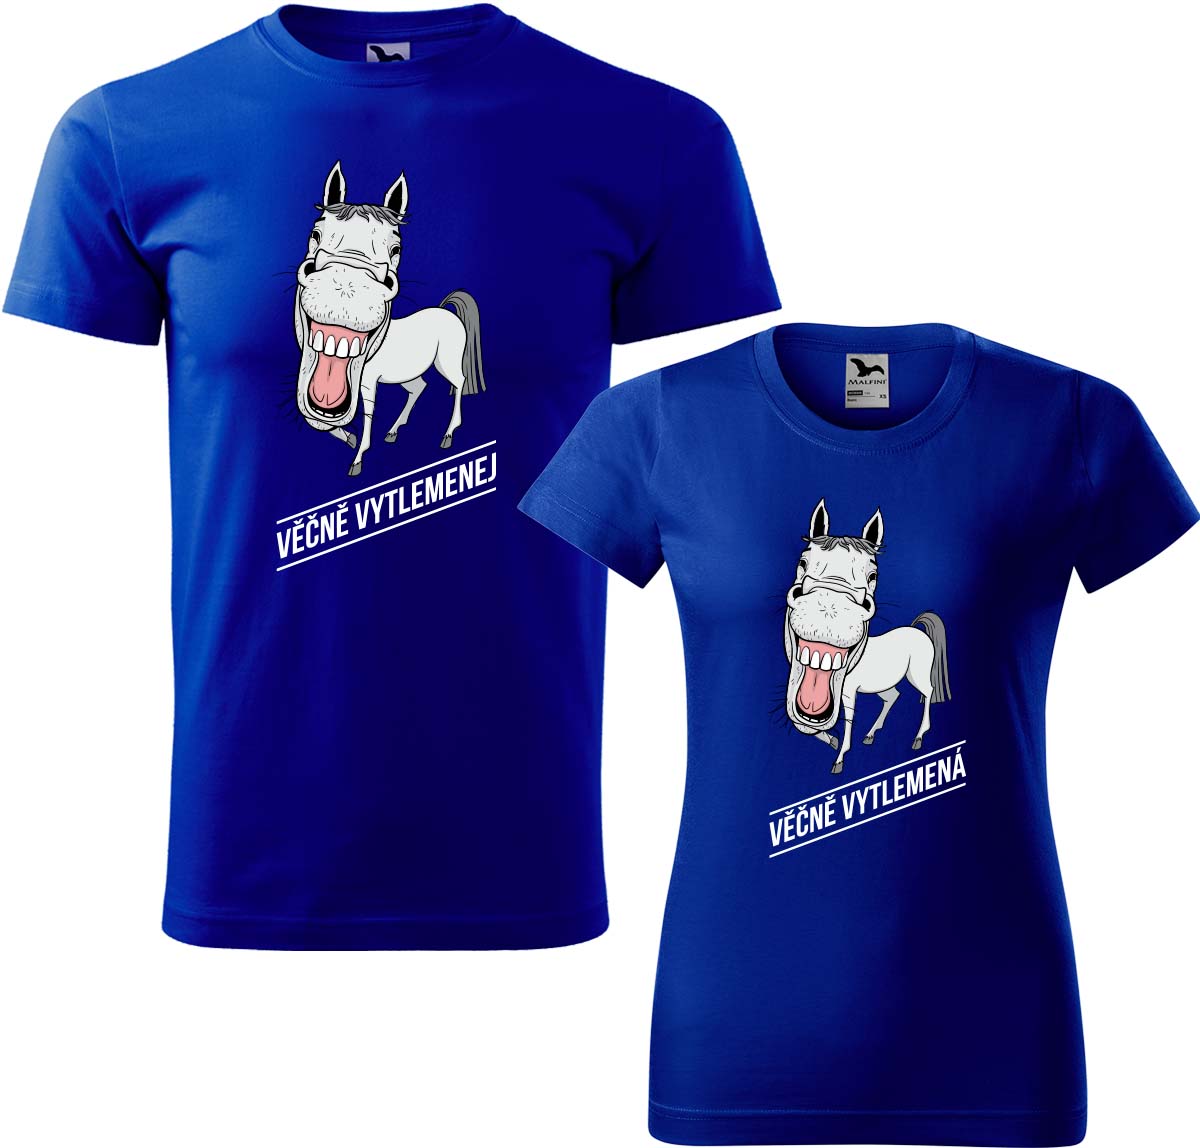 Trička pro páry - Věčně vytlemenej a věčně vytlemená Barva: Královská modrá (05), Velikost dámské tričko: M, Velikost pánské tričko: XL